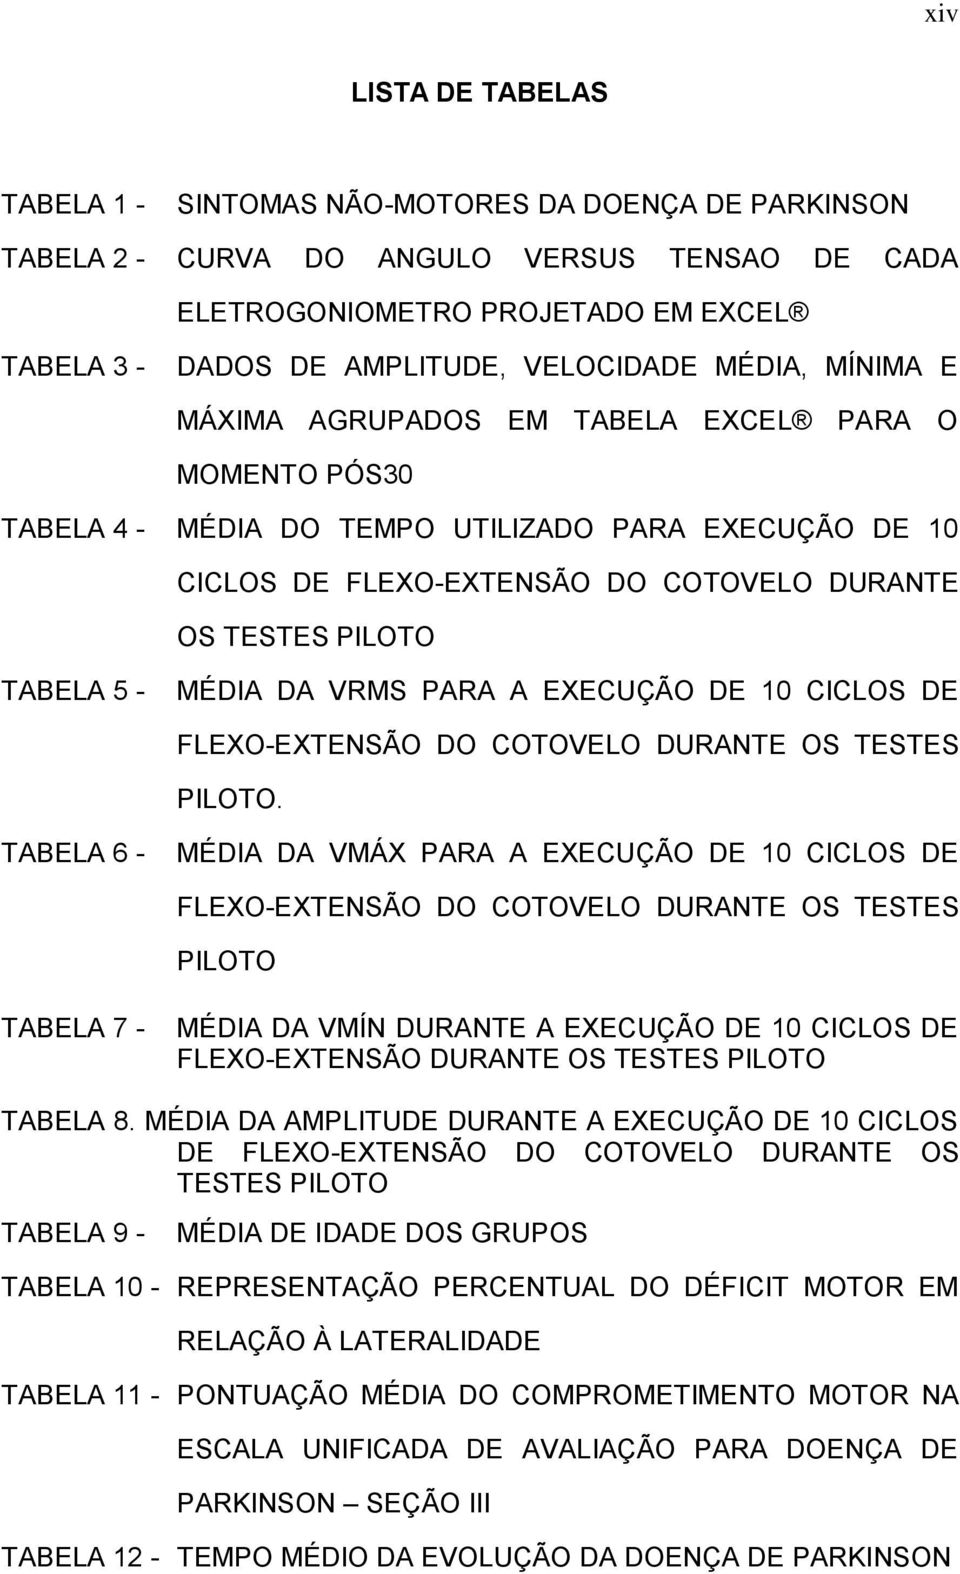 TABELA 5 - MÉDIA DA VRMS PARA A EXECUÇÃO DE 10 CICLOS DE FLEXO-EXTENSÃO DO COTOVELO DURANTE OS TESTES PILOTO.